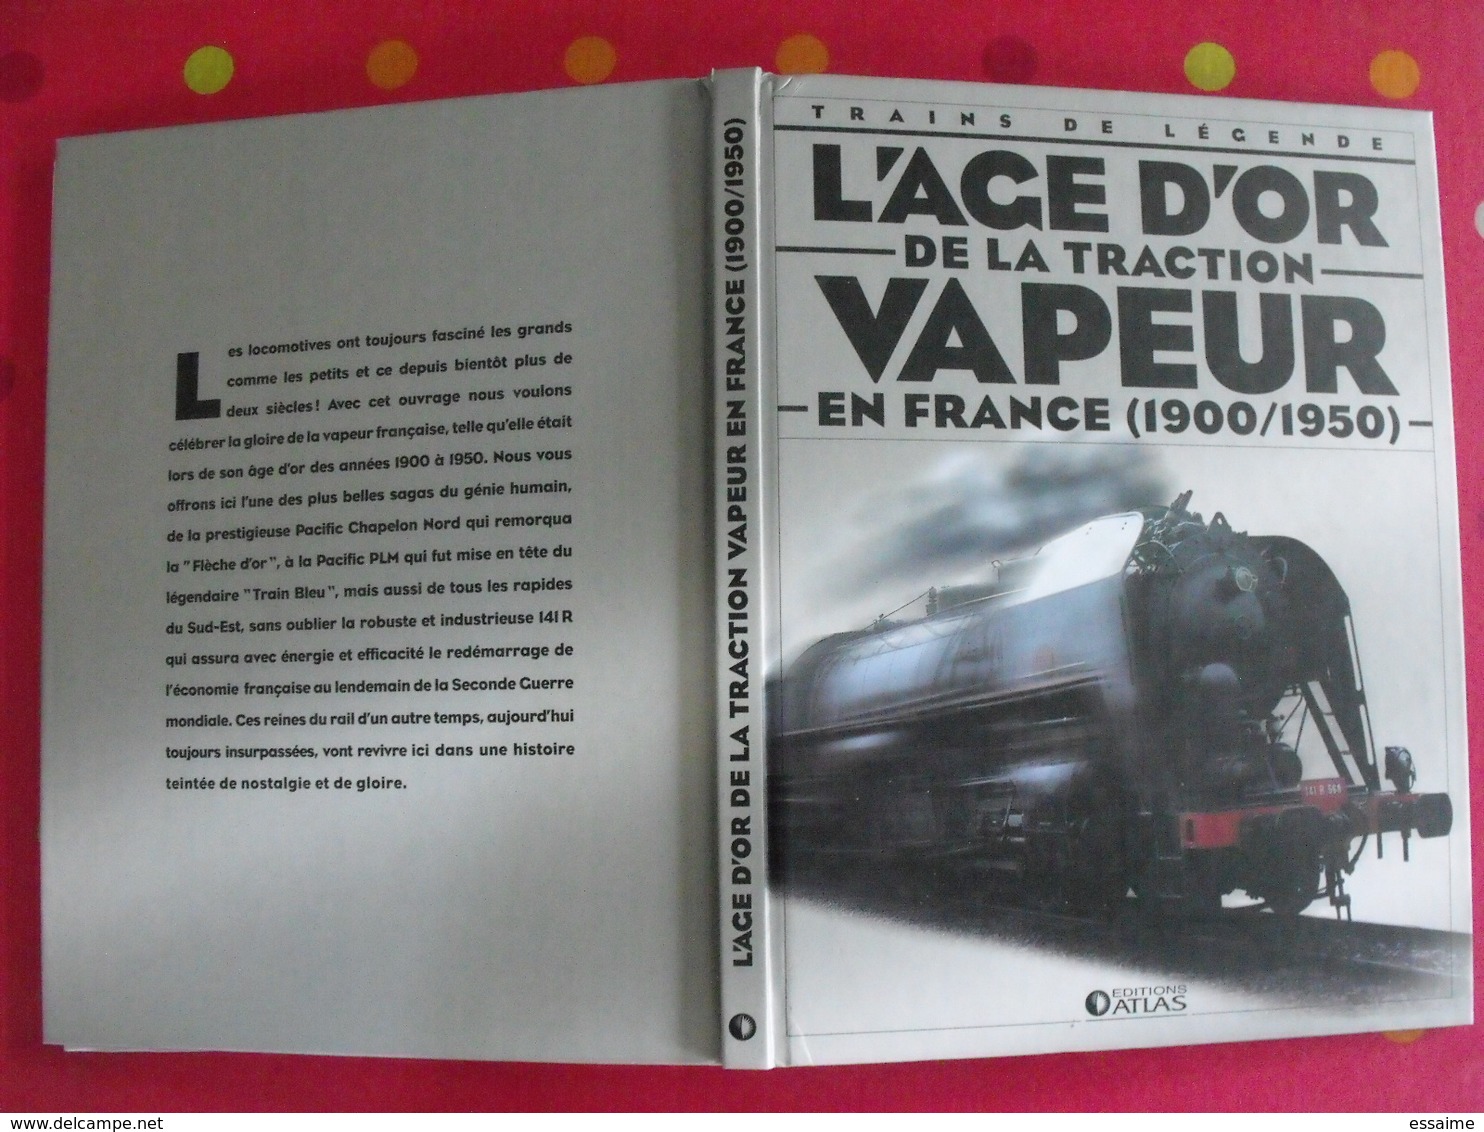 L'age D'or De La Traction Vapeur En France (1900-1950). Trains De Légende. Clive Lamming. Atlas 2005 + Poster - Chemin De Fer & Tramway